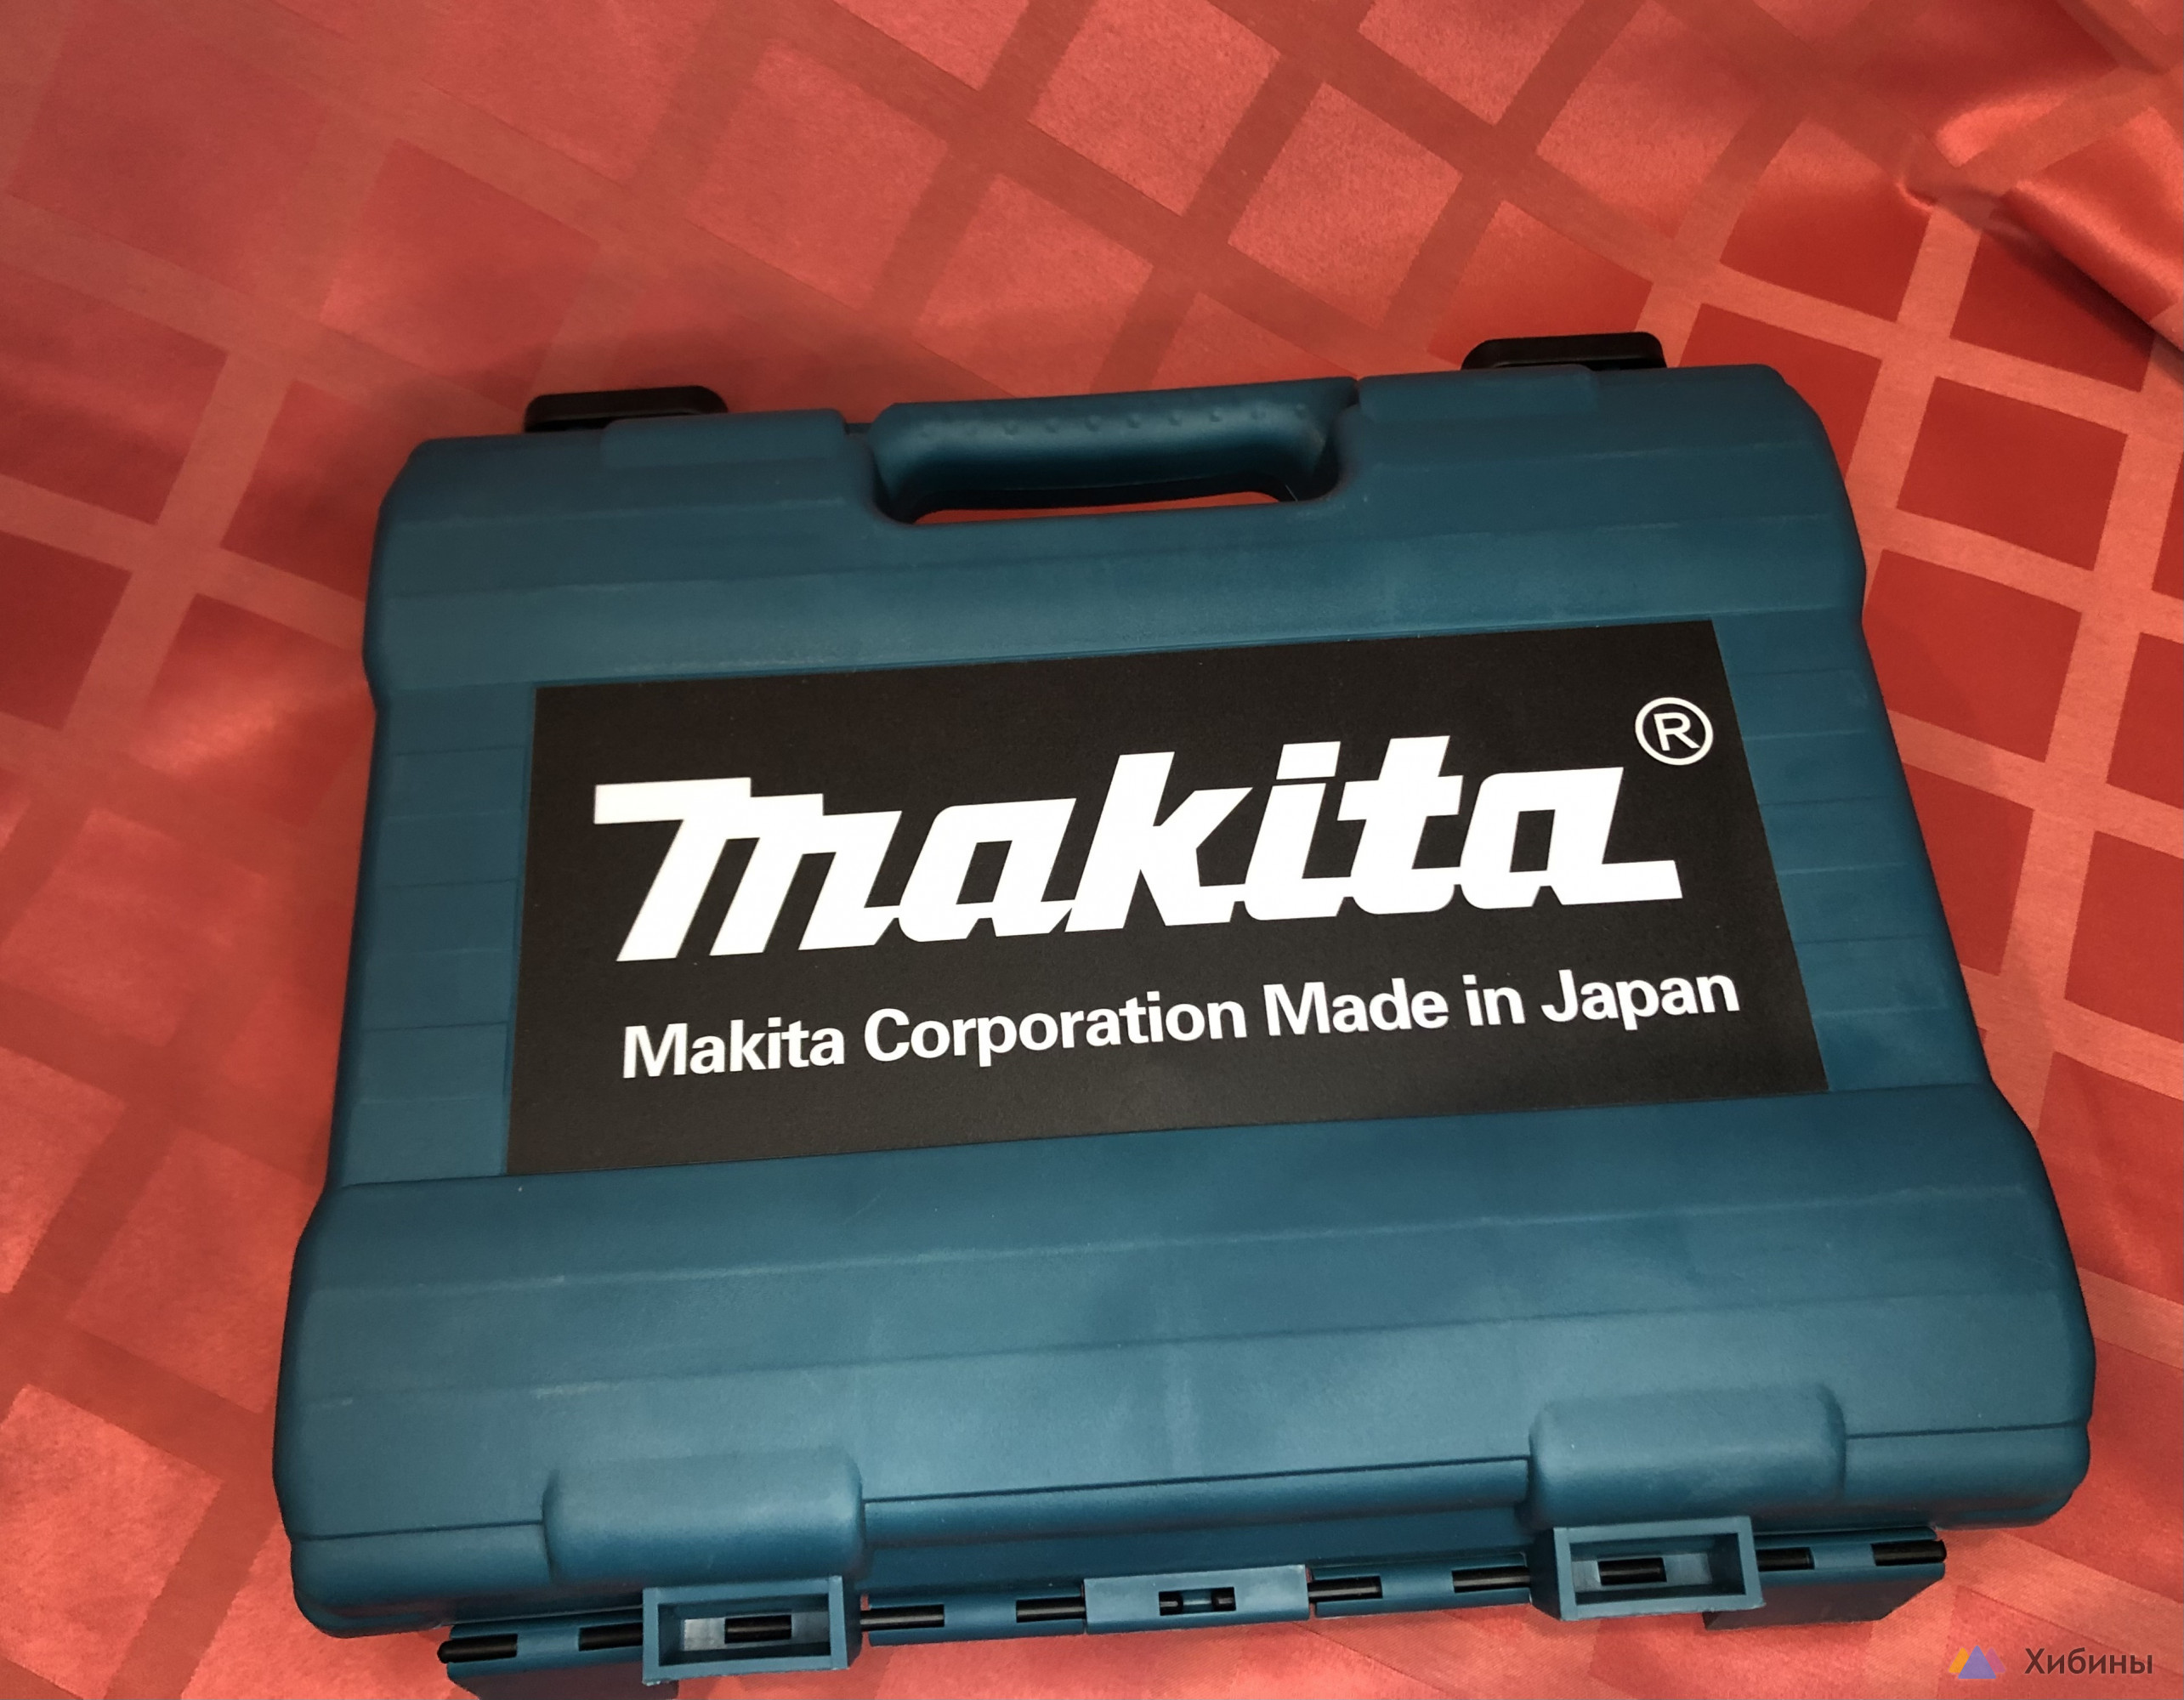 Аккумуляторный гайковерт Makita новый